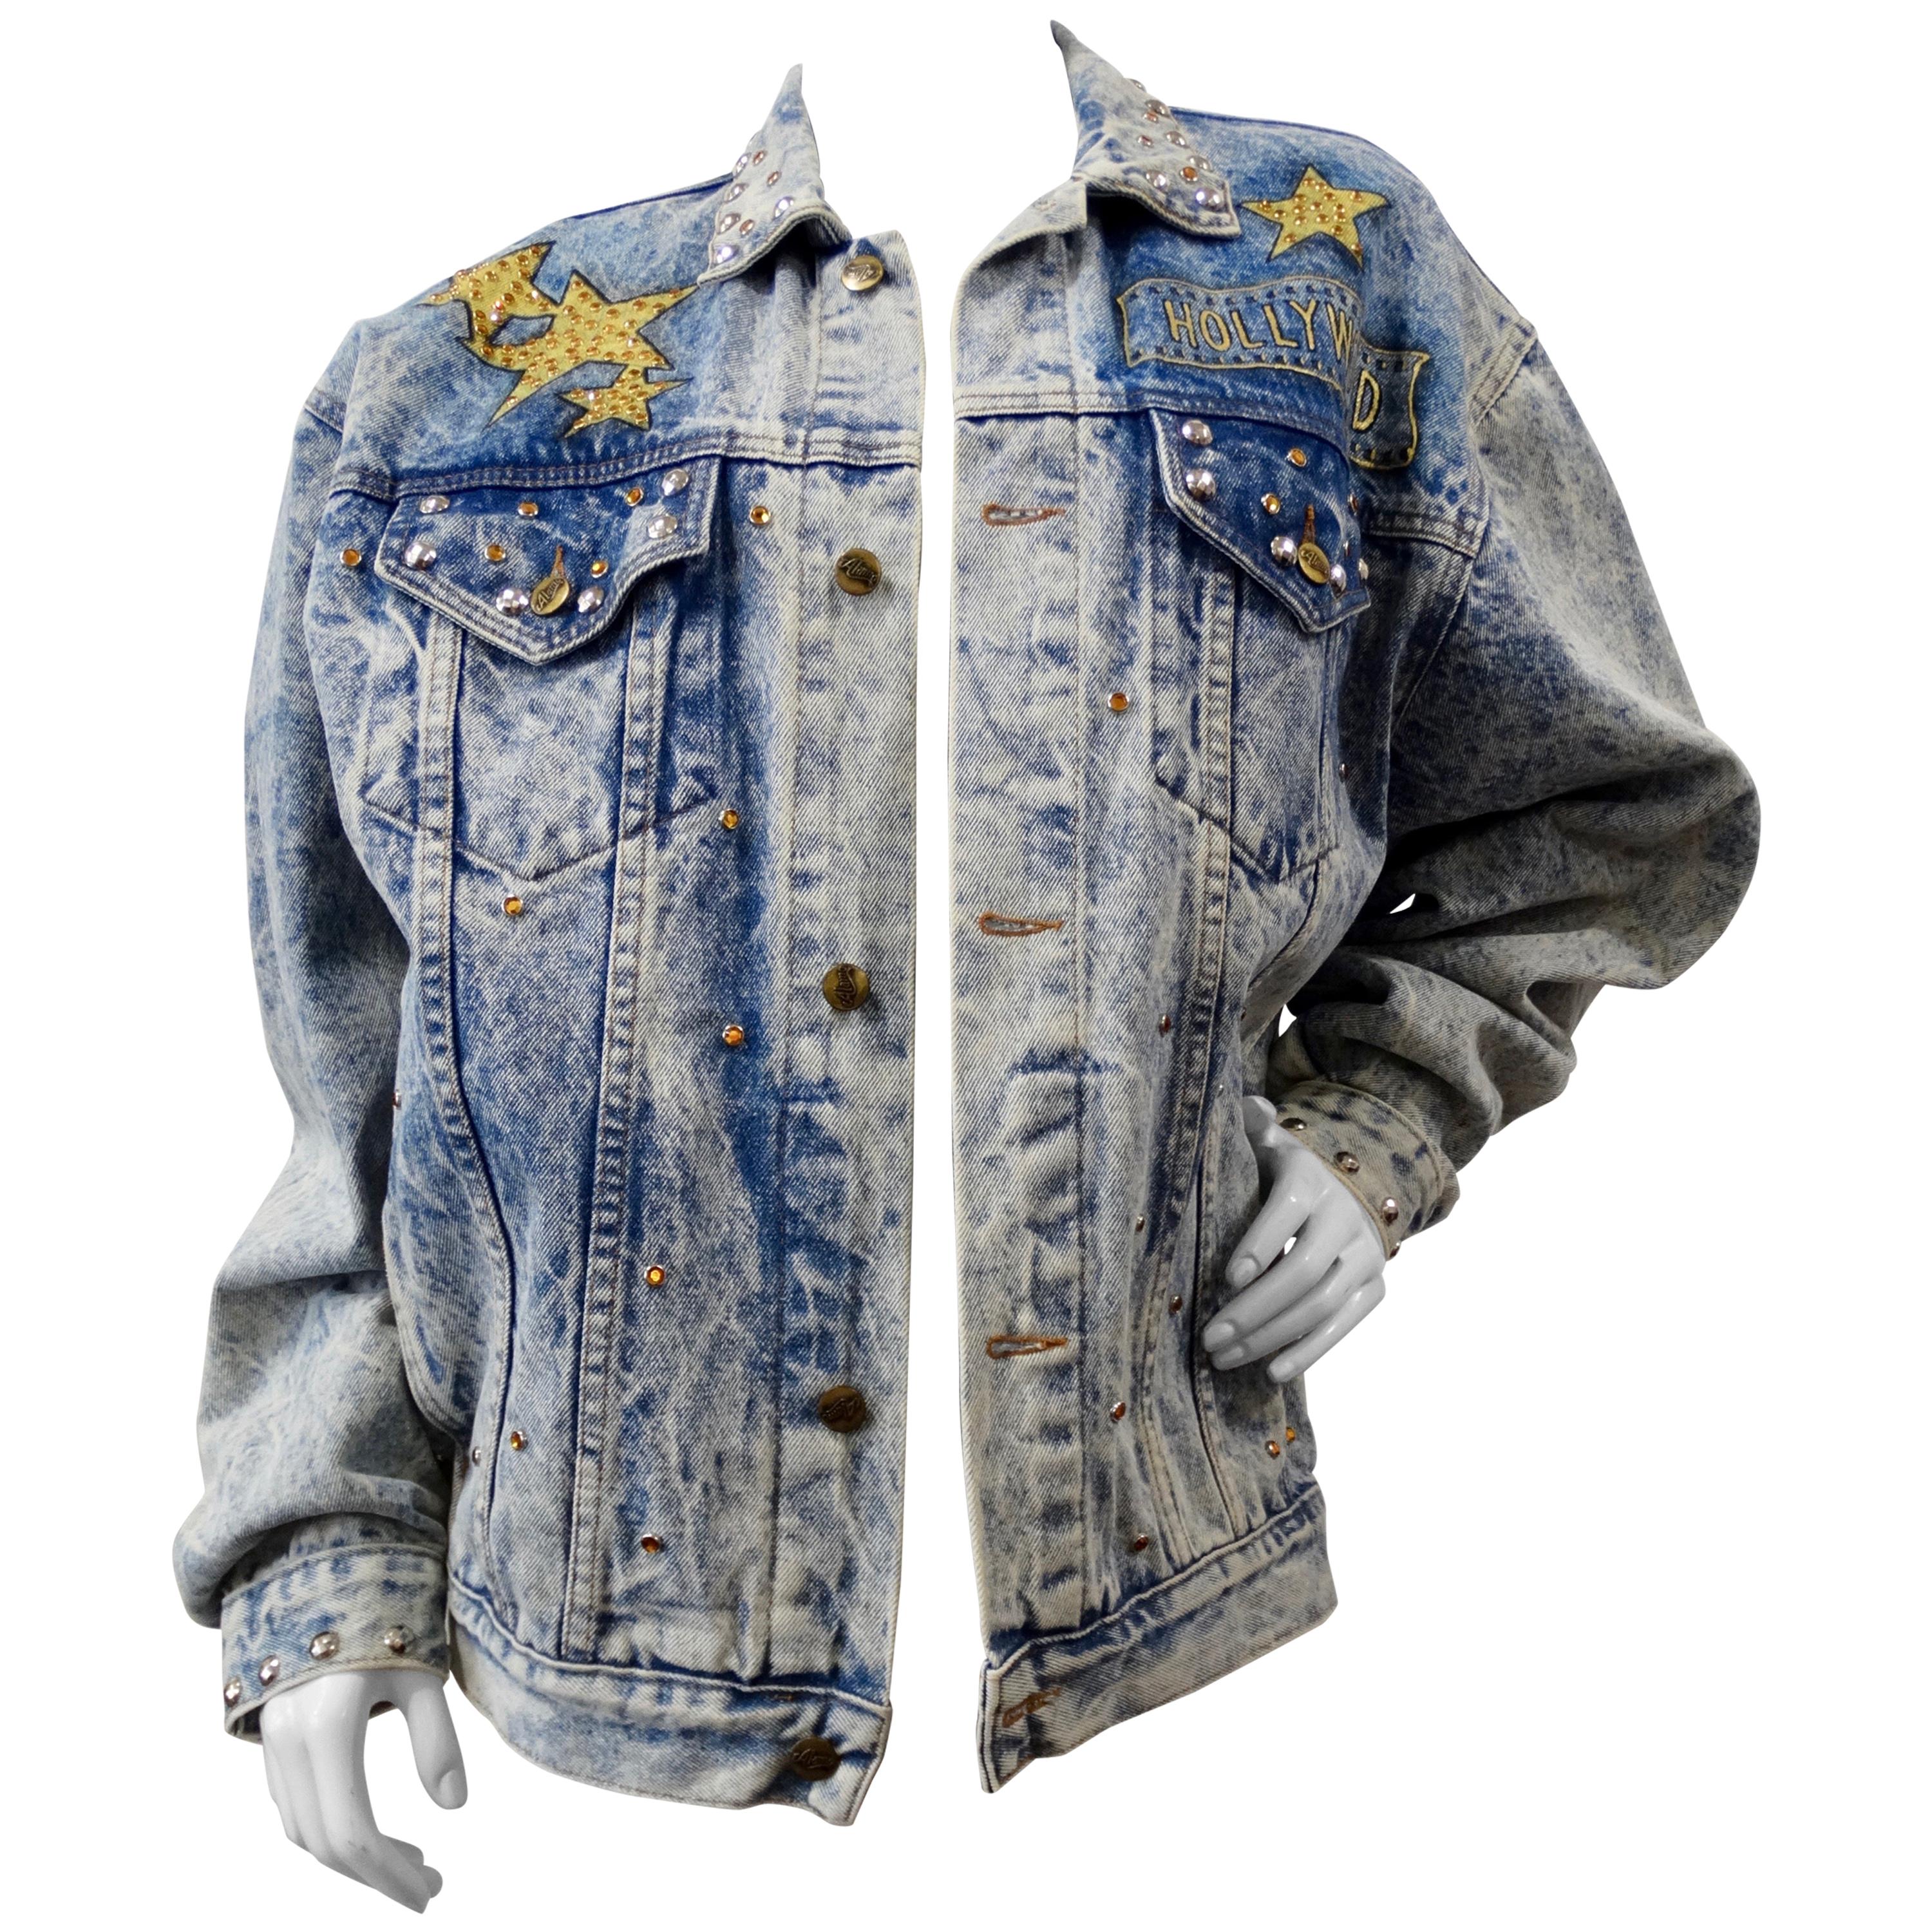 1987 Tony Alamo "Hollywood" Rhinestone Embellished Jean Jacket